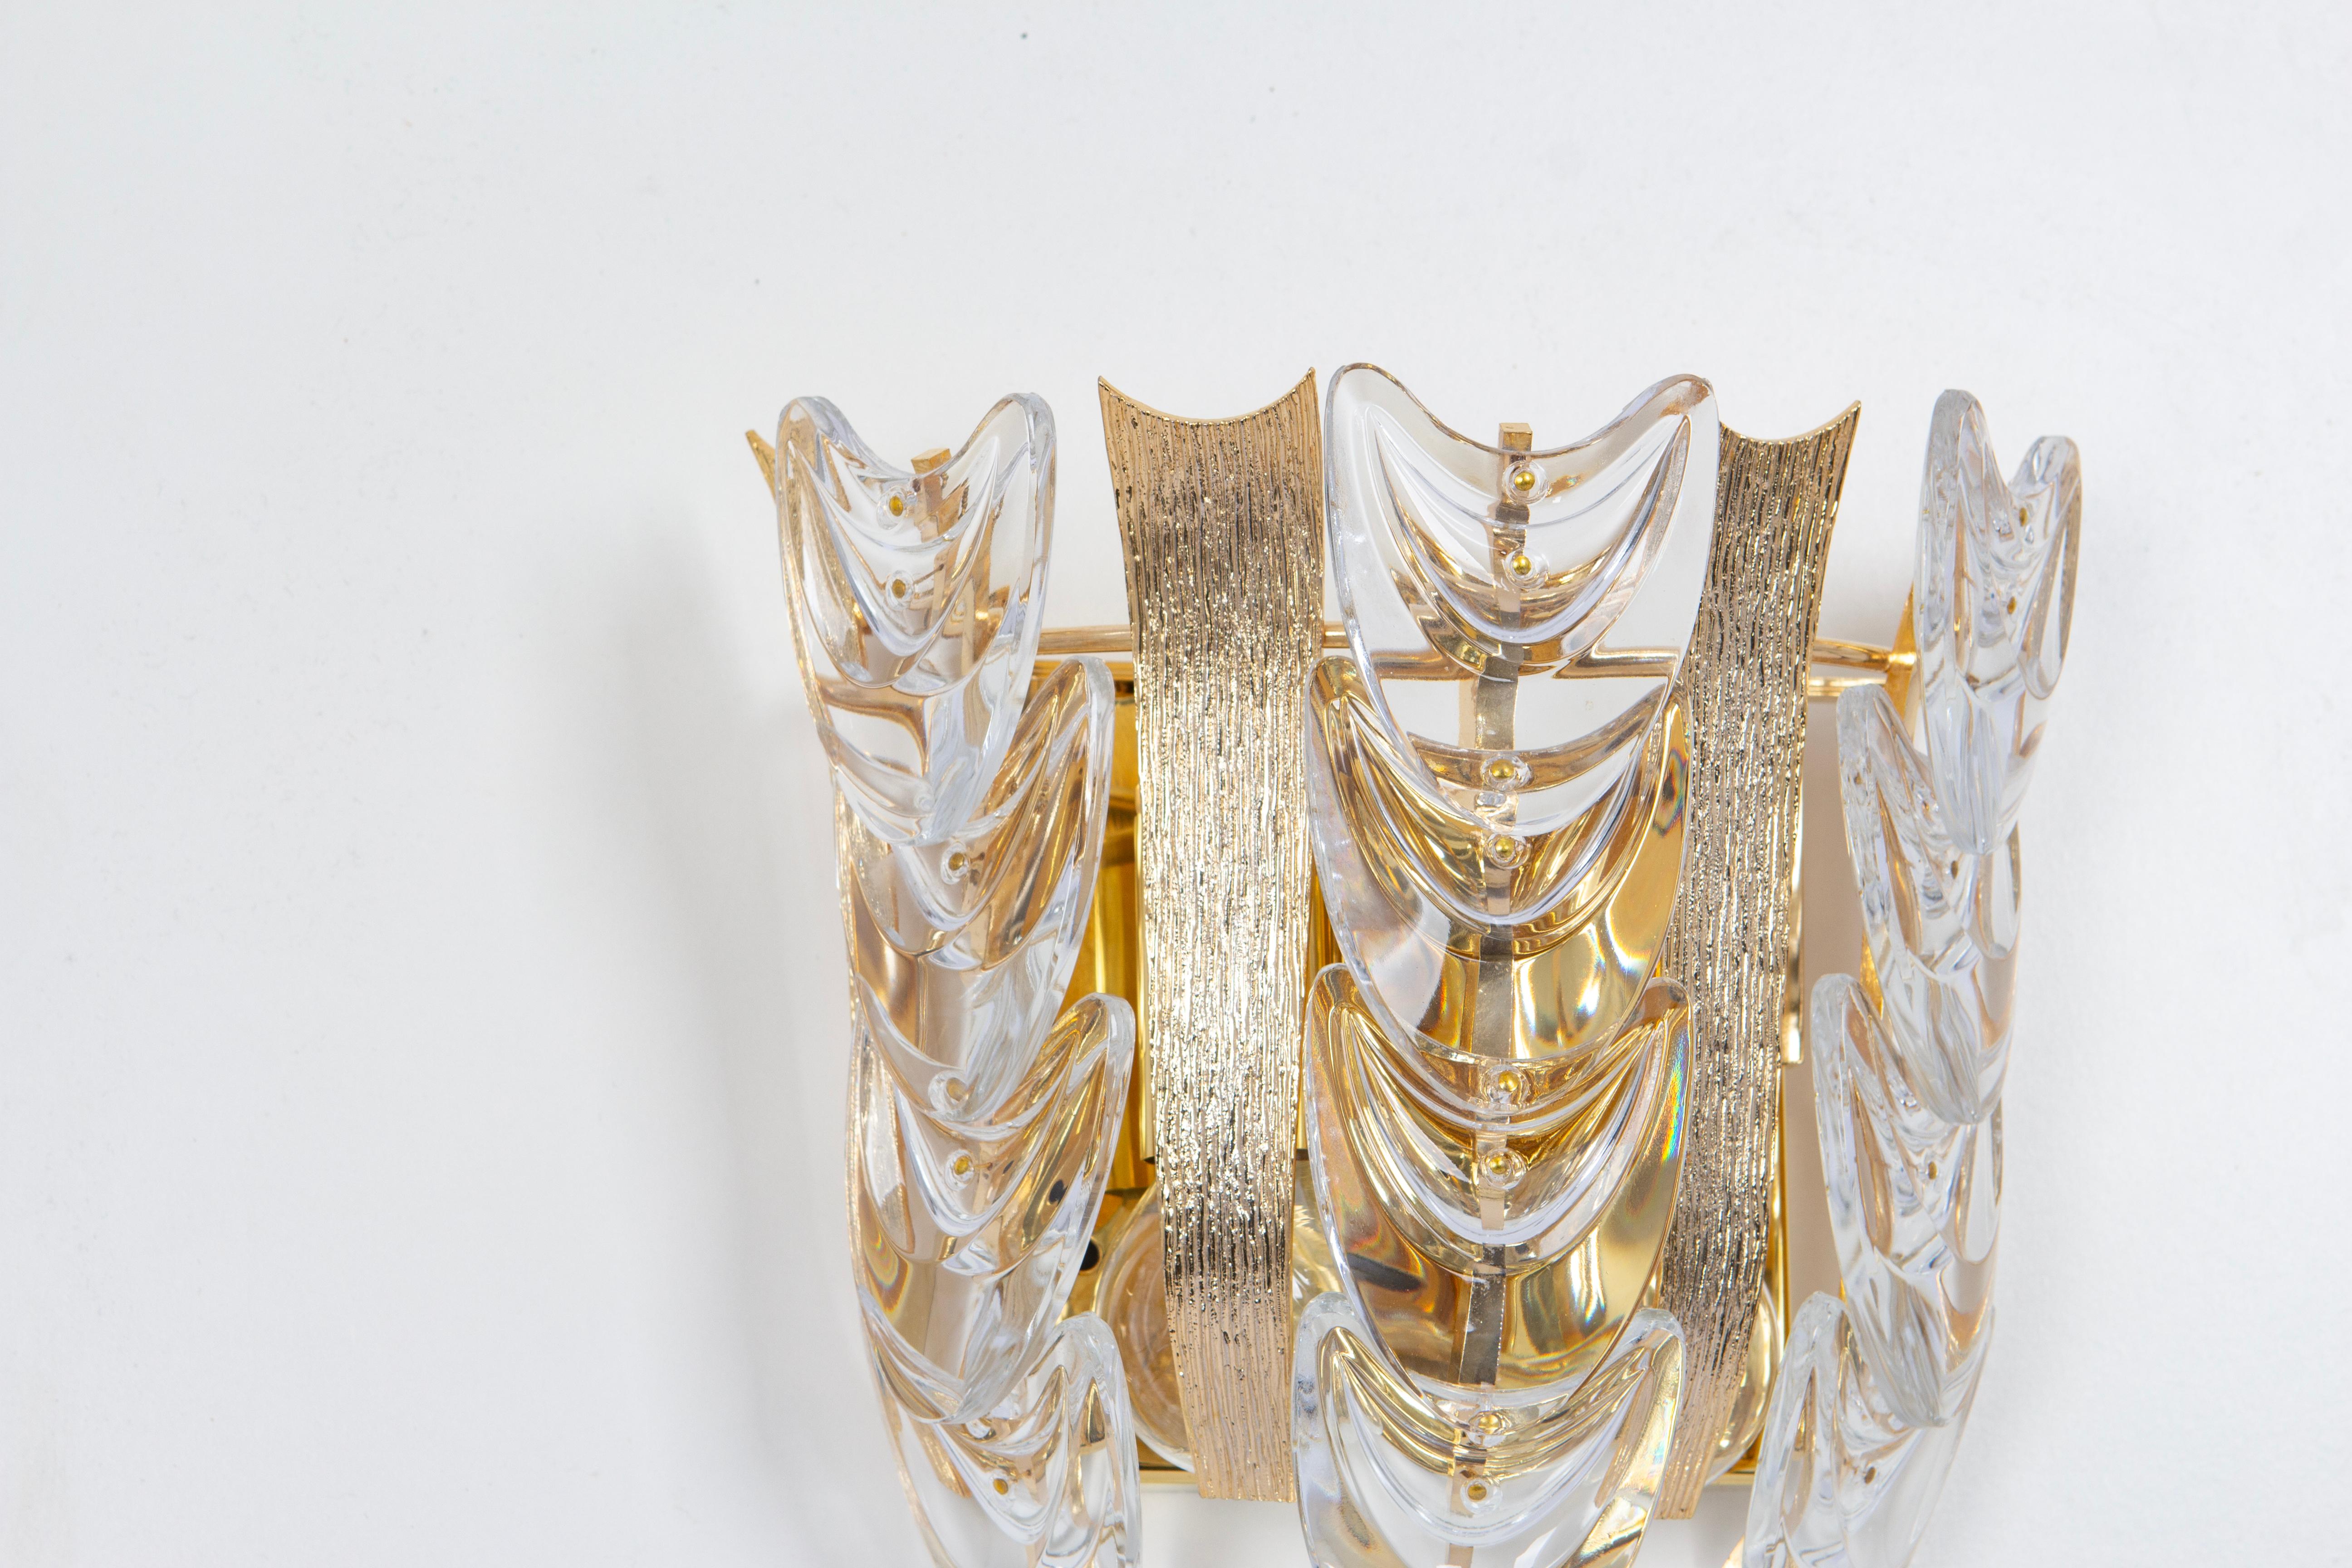 Wunderschöner goldener Wandleuchter, hergestellt von Palwa, Design Sciolari Style- Deutschland, um 1960-1969.
Kristallgläser auf einem vergoldeten Messingrahmen.
Das Beste aus den 1960er Jahren aus Deutschland.

Hochwertig und in sehr gutem Zustand.